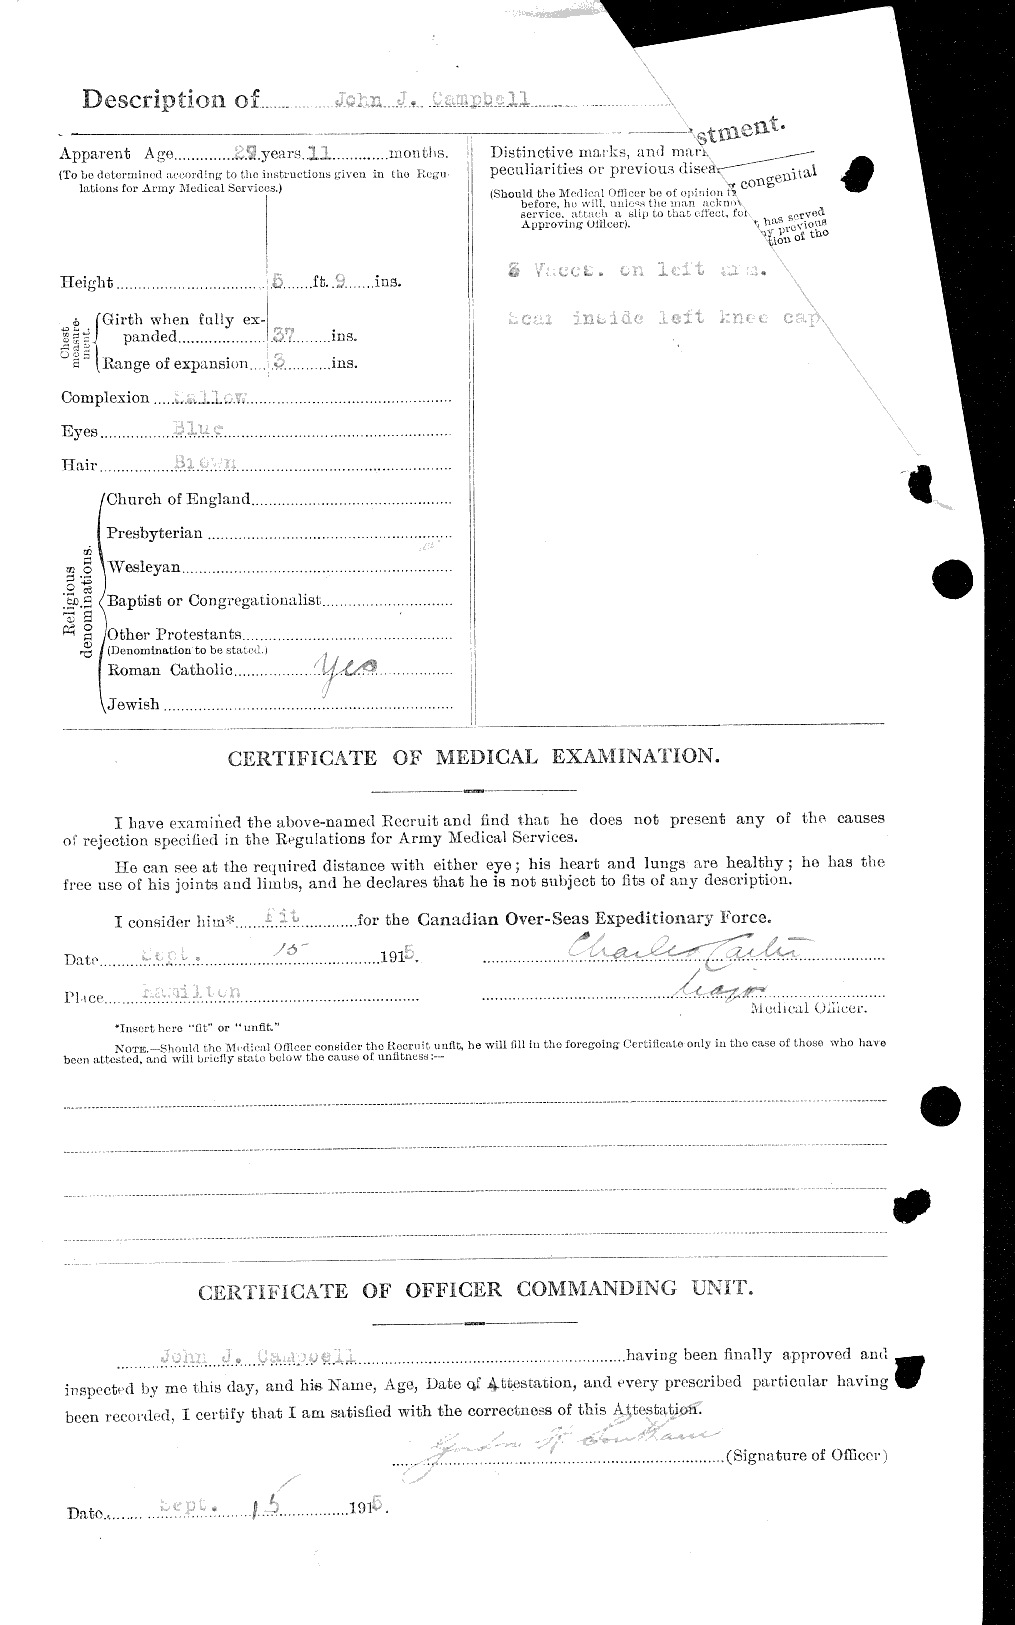 Dossiers du Personnel de la Première Guerre mondiale - CEC 008550b